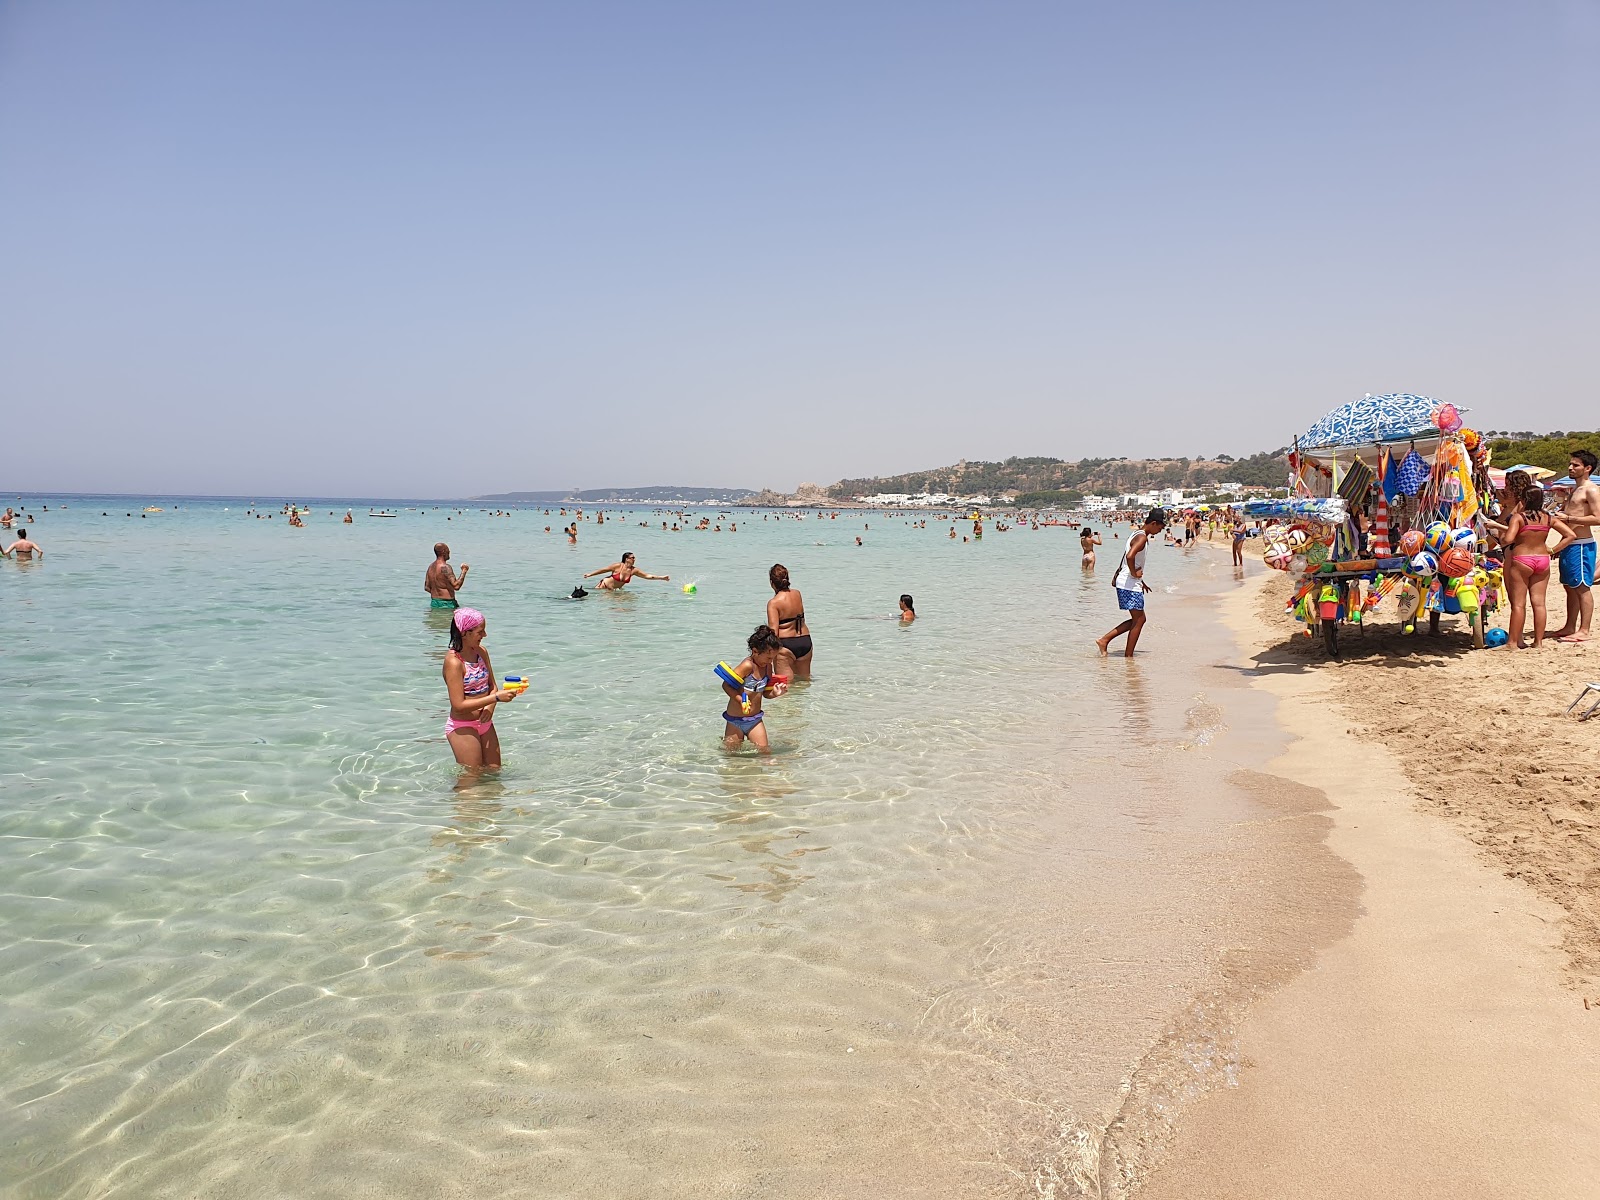 Foto von Spiaggia Padula Bianca - beliebter Ort unter Entspannungskennern